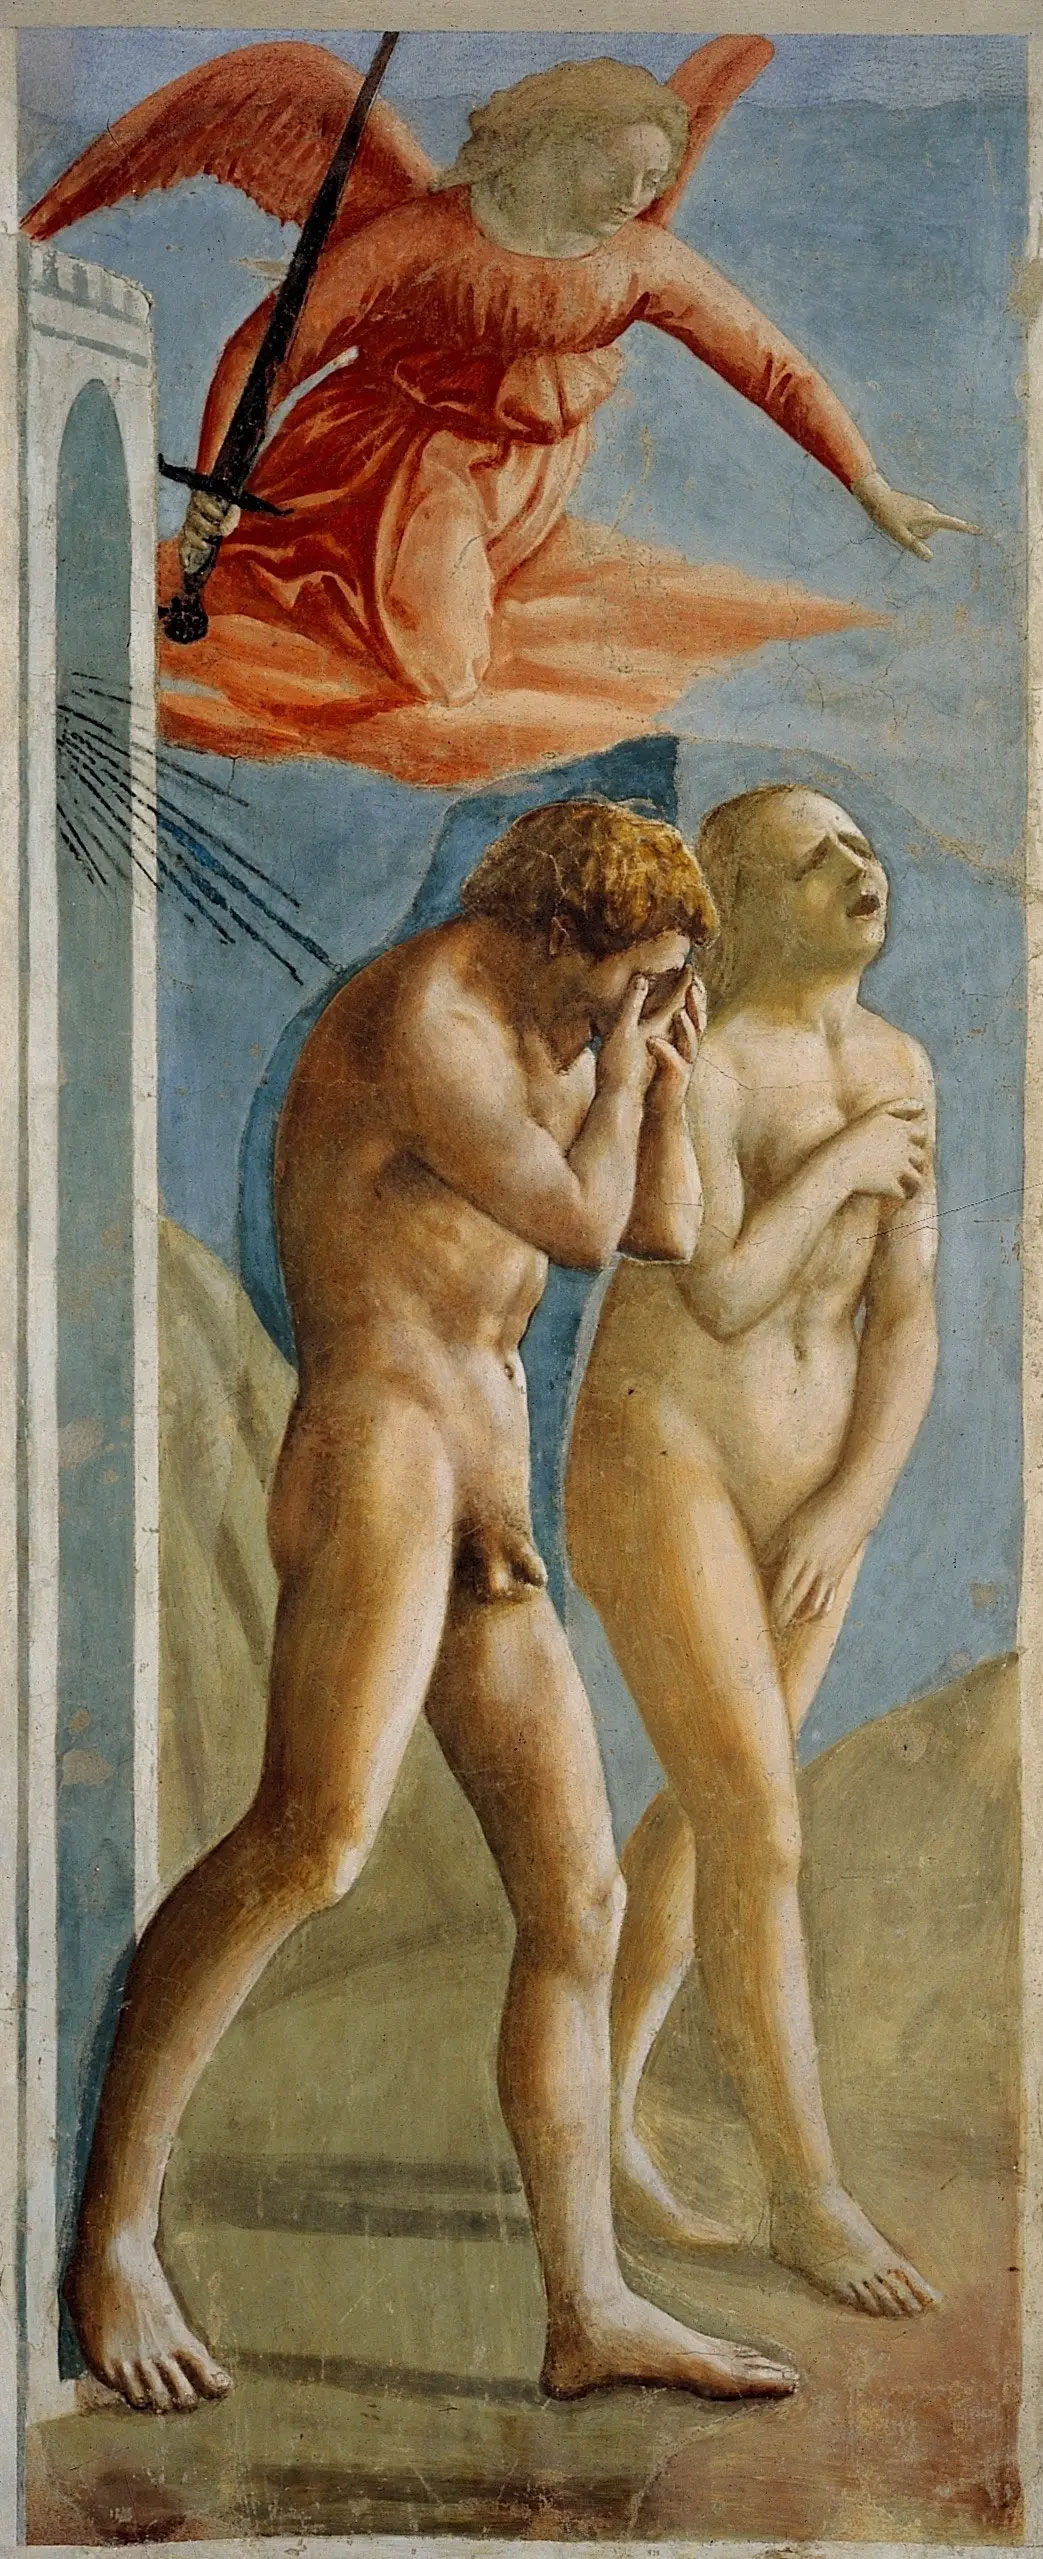 Masaccio, Expulsion of the Progenitors (1424-1425; fresco, 214 x 88 cm; Florence, Santa Maria del Carmine, Brancacci Chapel)